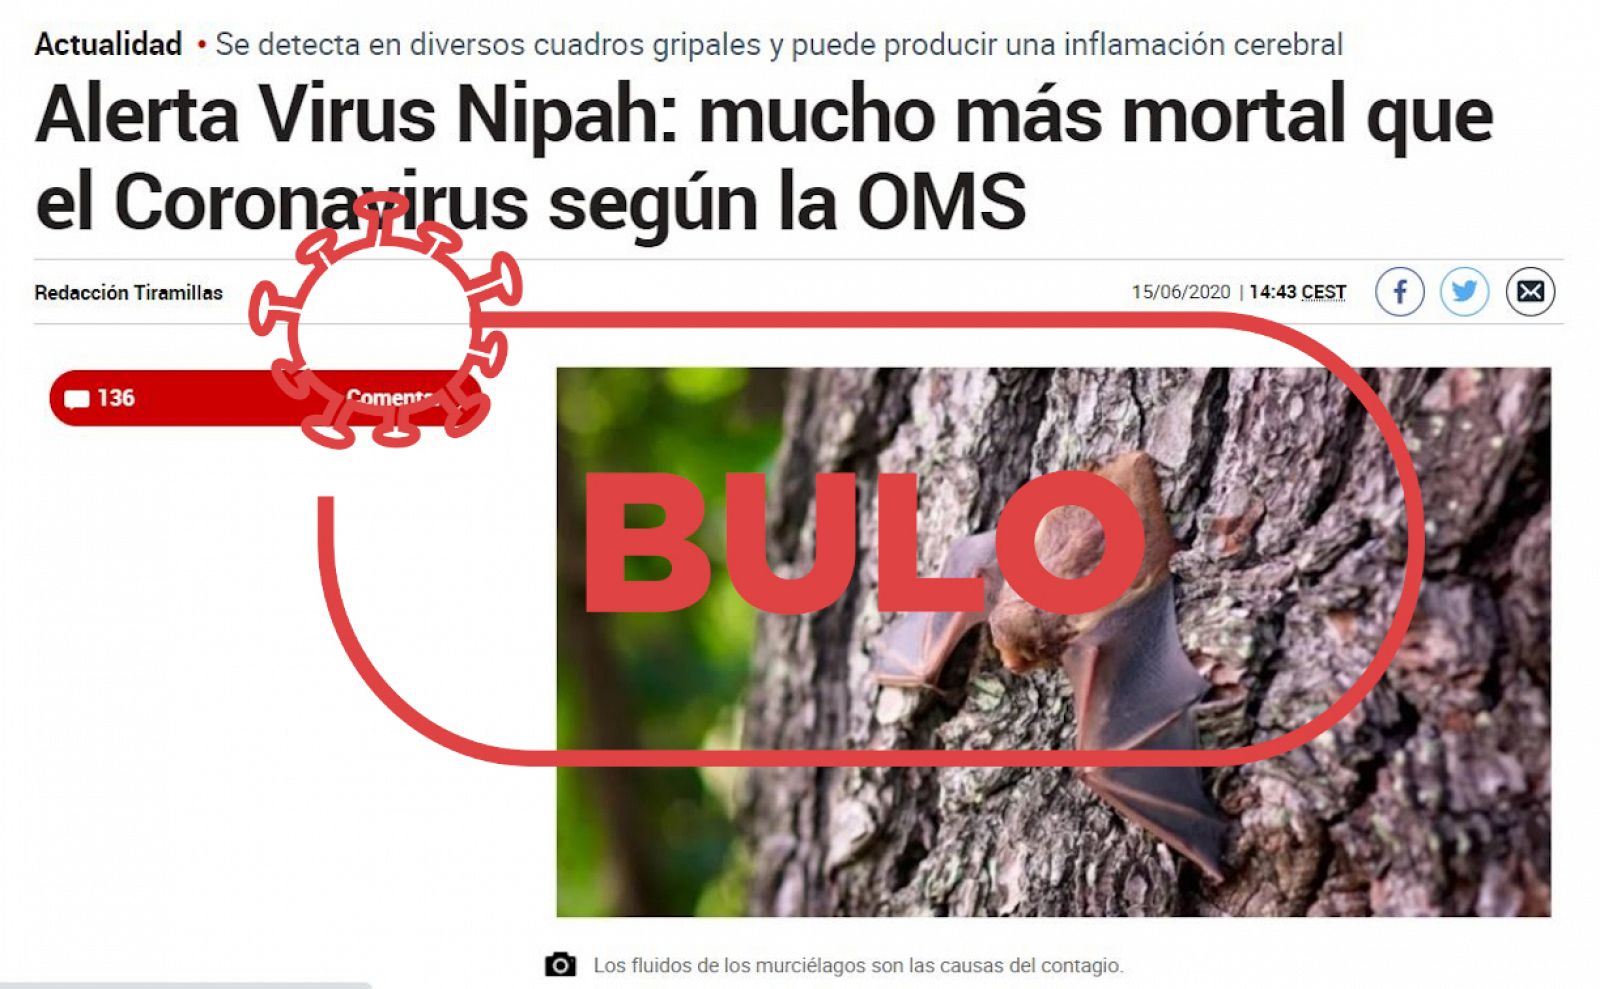 Captura de la noticia con el bulo sobre la alerta mundial por el virus de Nipah